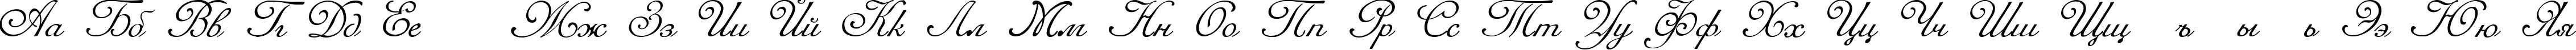 Пример написания русского алфавита шрифтом Romana Script